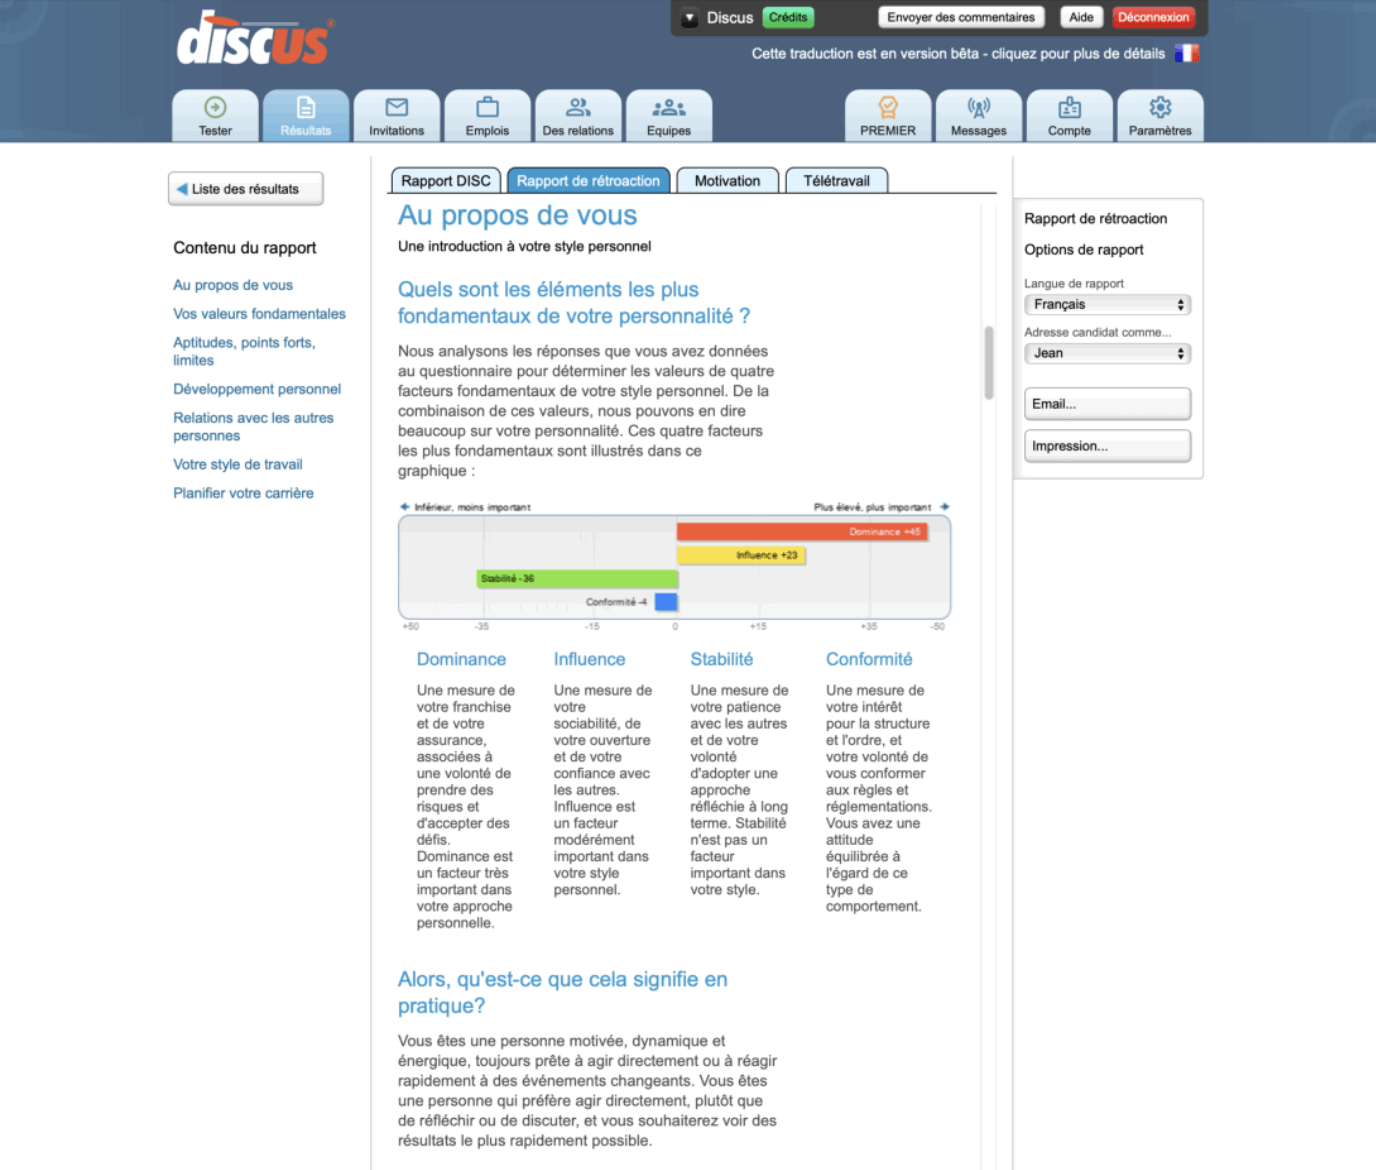 Capture d'écran montrant un rapport de commentaires de Discus affiché via un navigateur Web